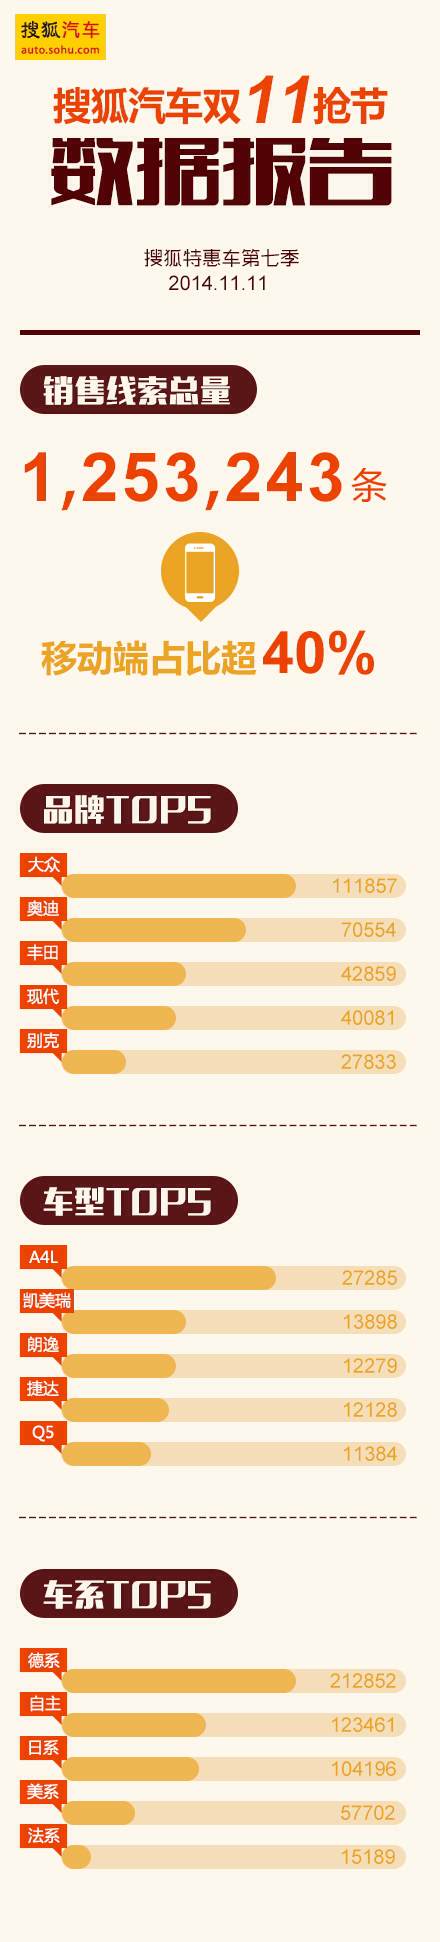 搜狐汽车双11销售线索破120万 移动占比超40%